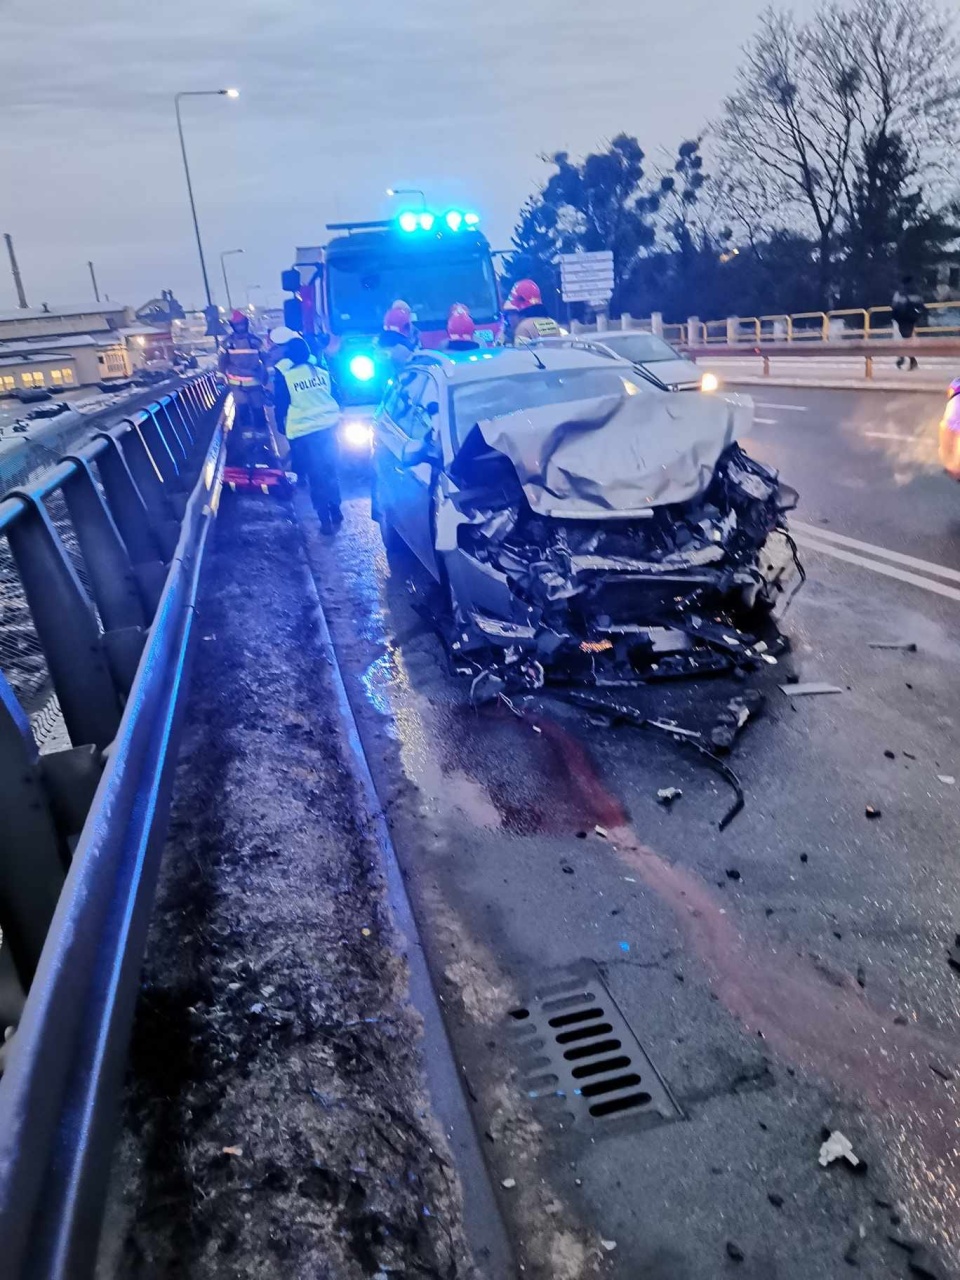 Policja zgłoszenie o wypadku otrzymała w piątek (12 stycznia) o godz. 7.23/fot. Heron15 Pomoc Drogowa Bydgoszcz 24h